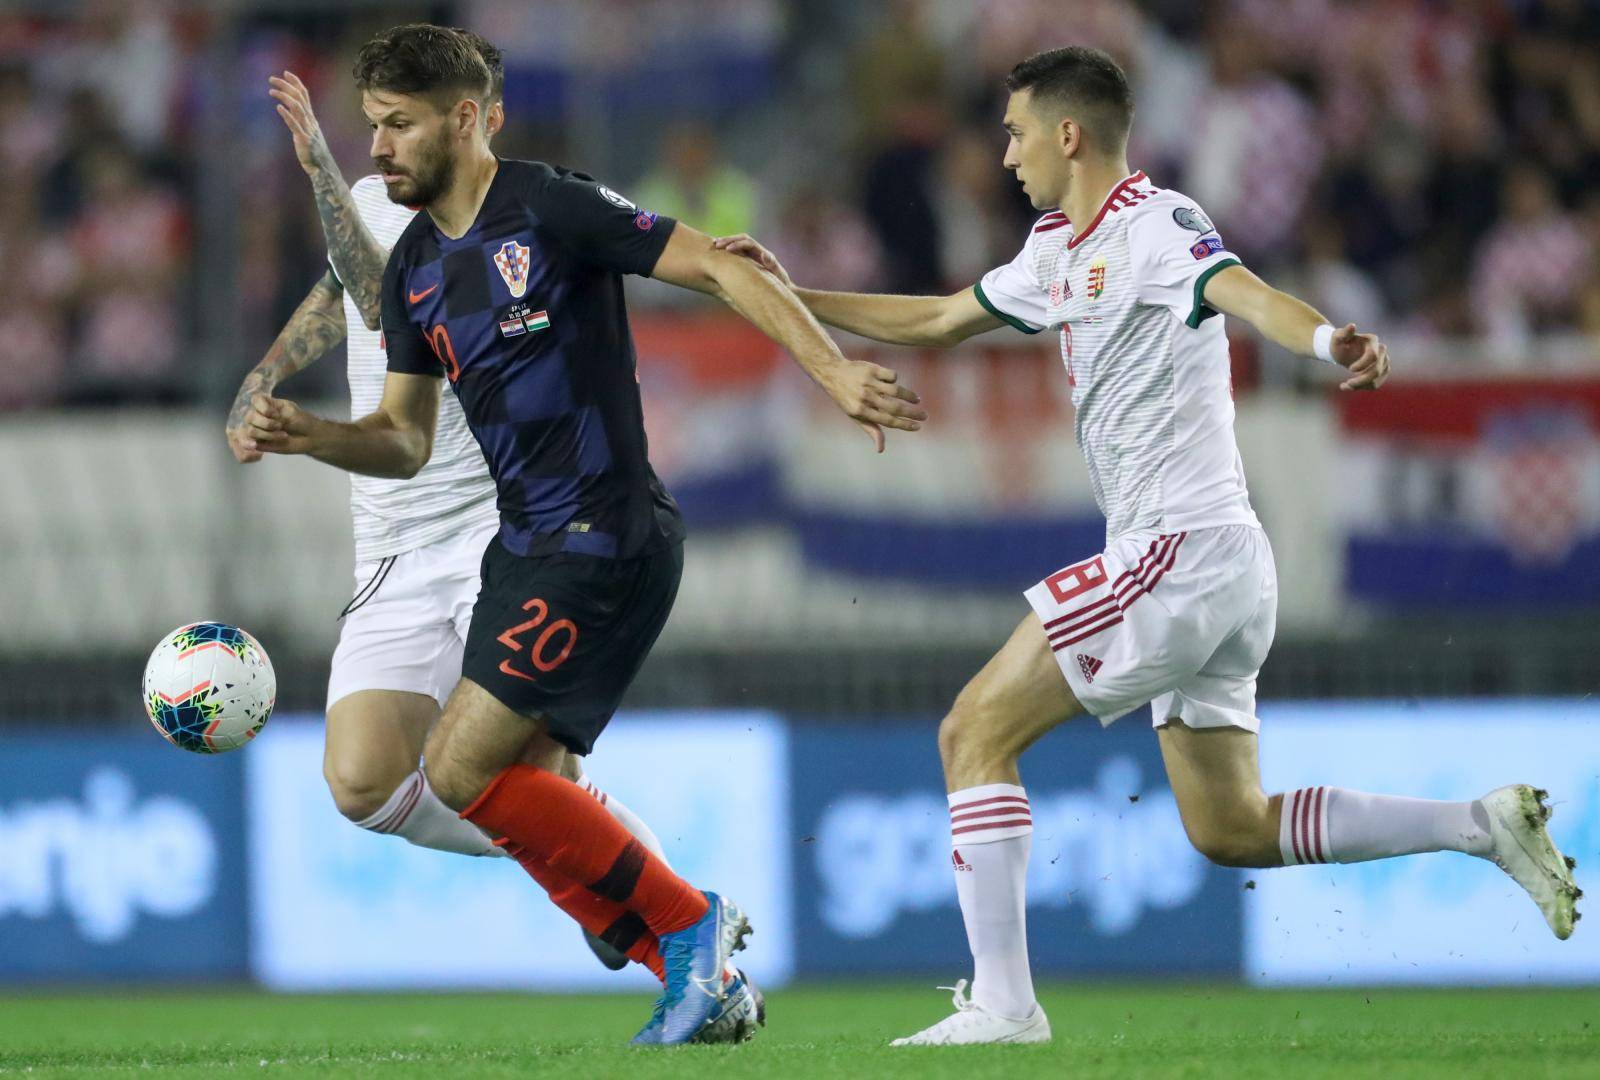 Susret Hrvatske i MaÄarske u kvalifikacijama za Europsko prvenstvo